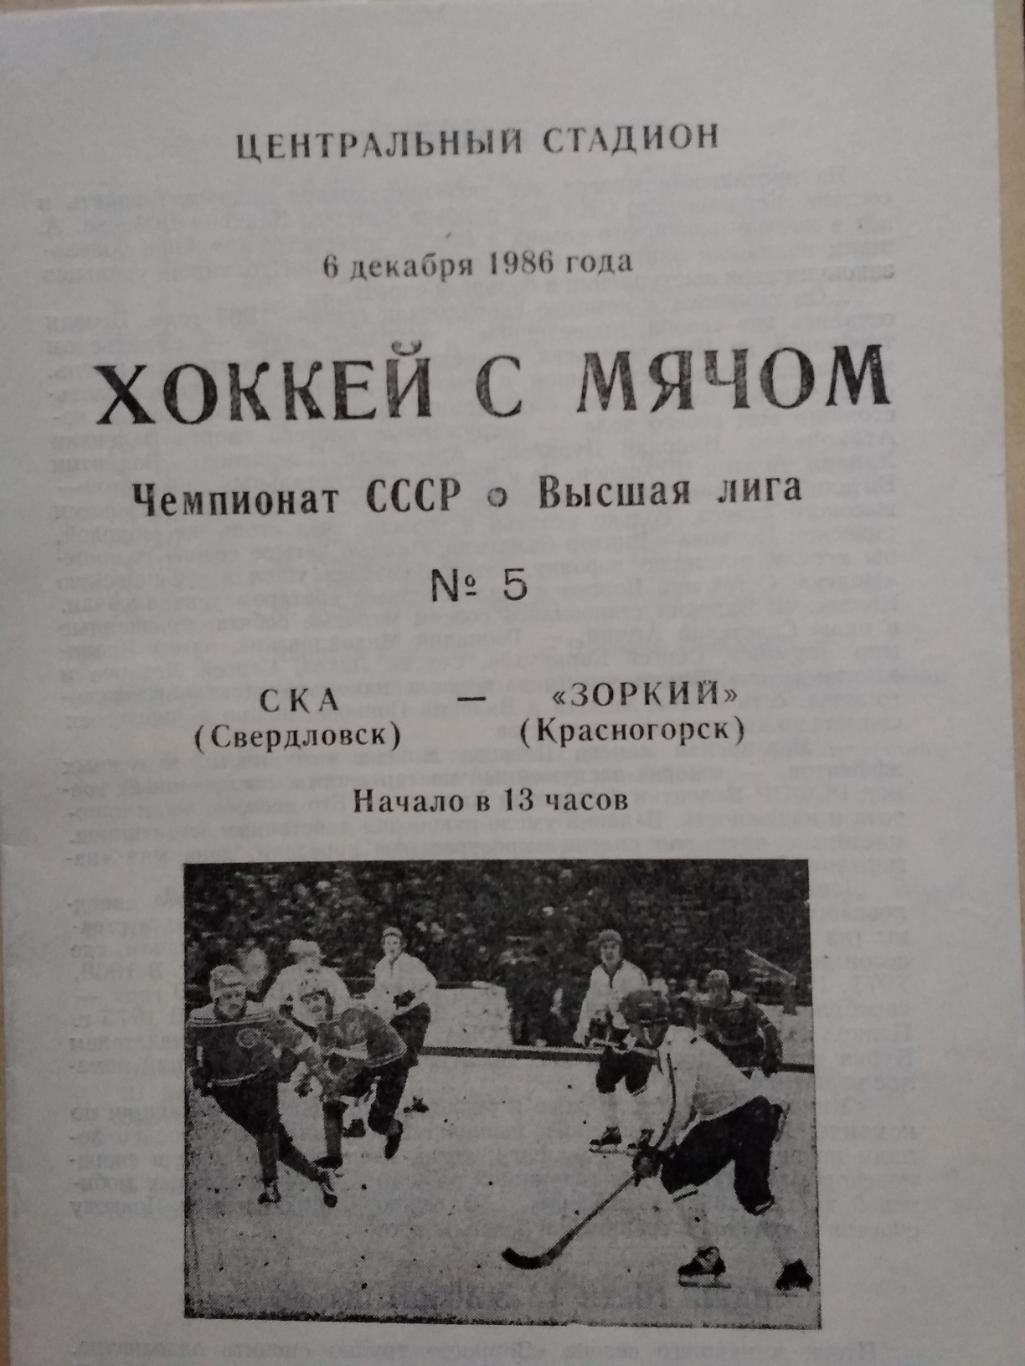 СКА (Свердловск) - Зоркий (Красногорск). 6 декабря 1986.